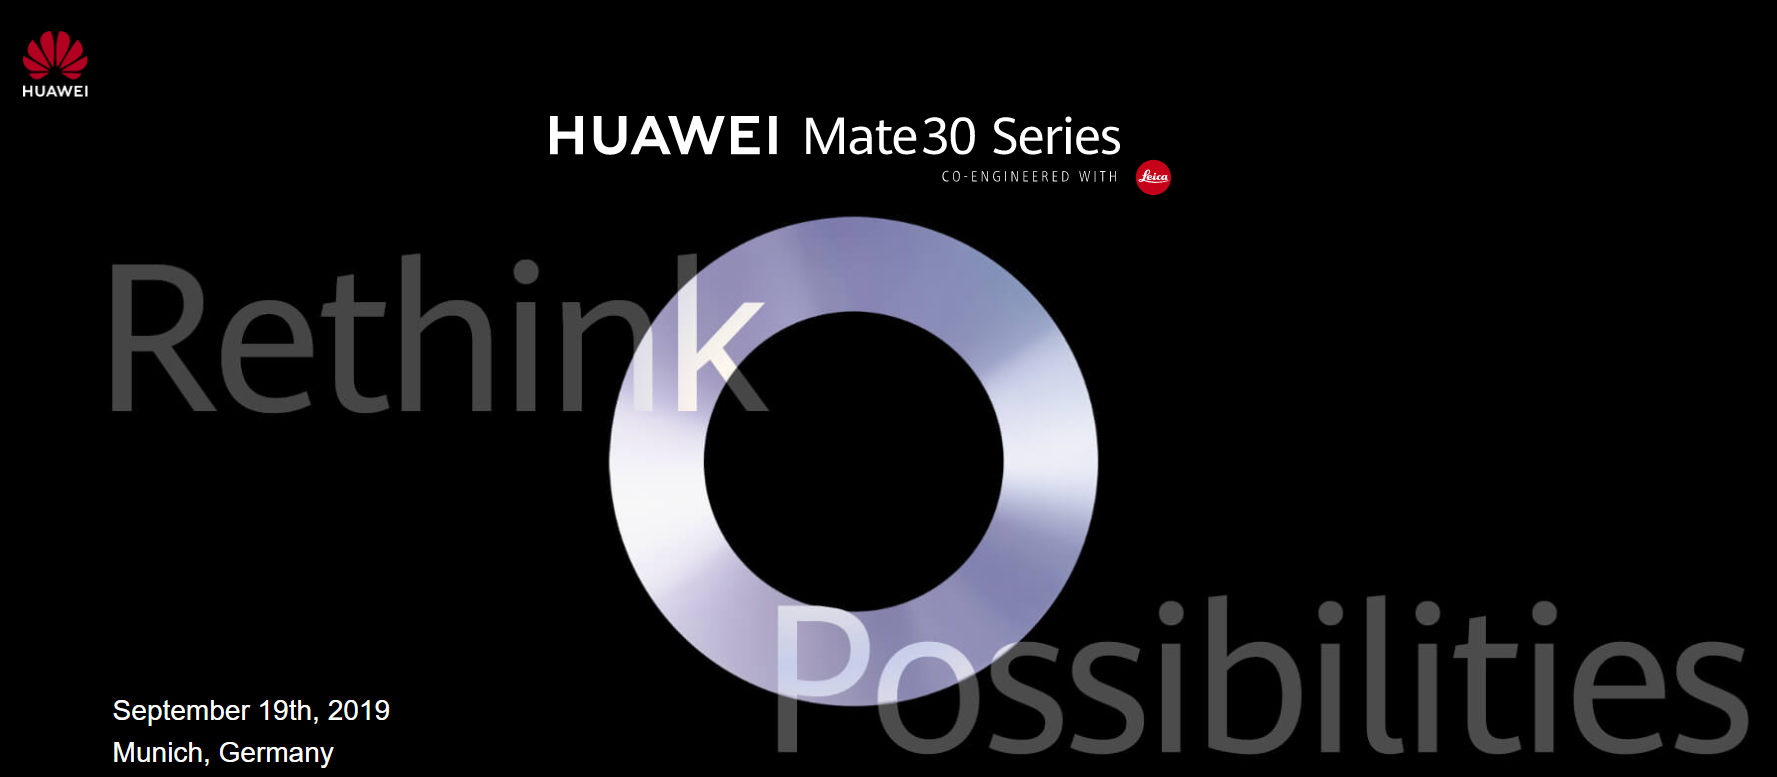 【快訊報報】華為 HUAWEI Mate30 系列新機 將在 9/19 德國慕尼黑發表 - Mate30 - 科技狗 3C DOG